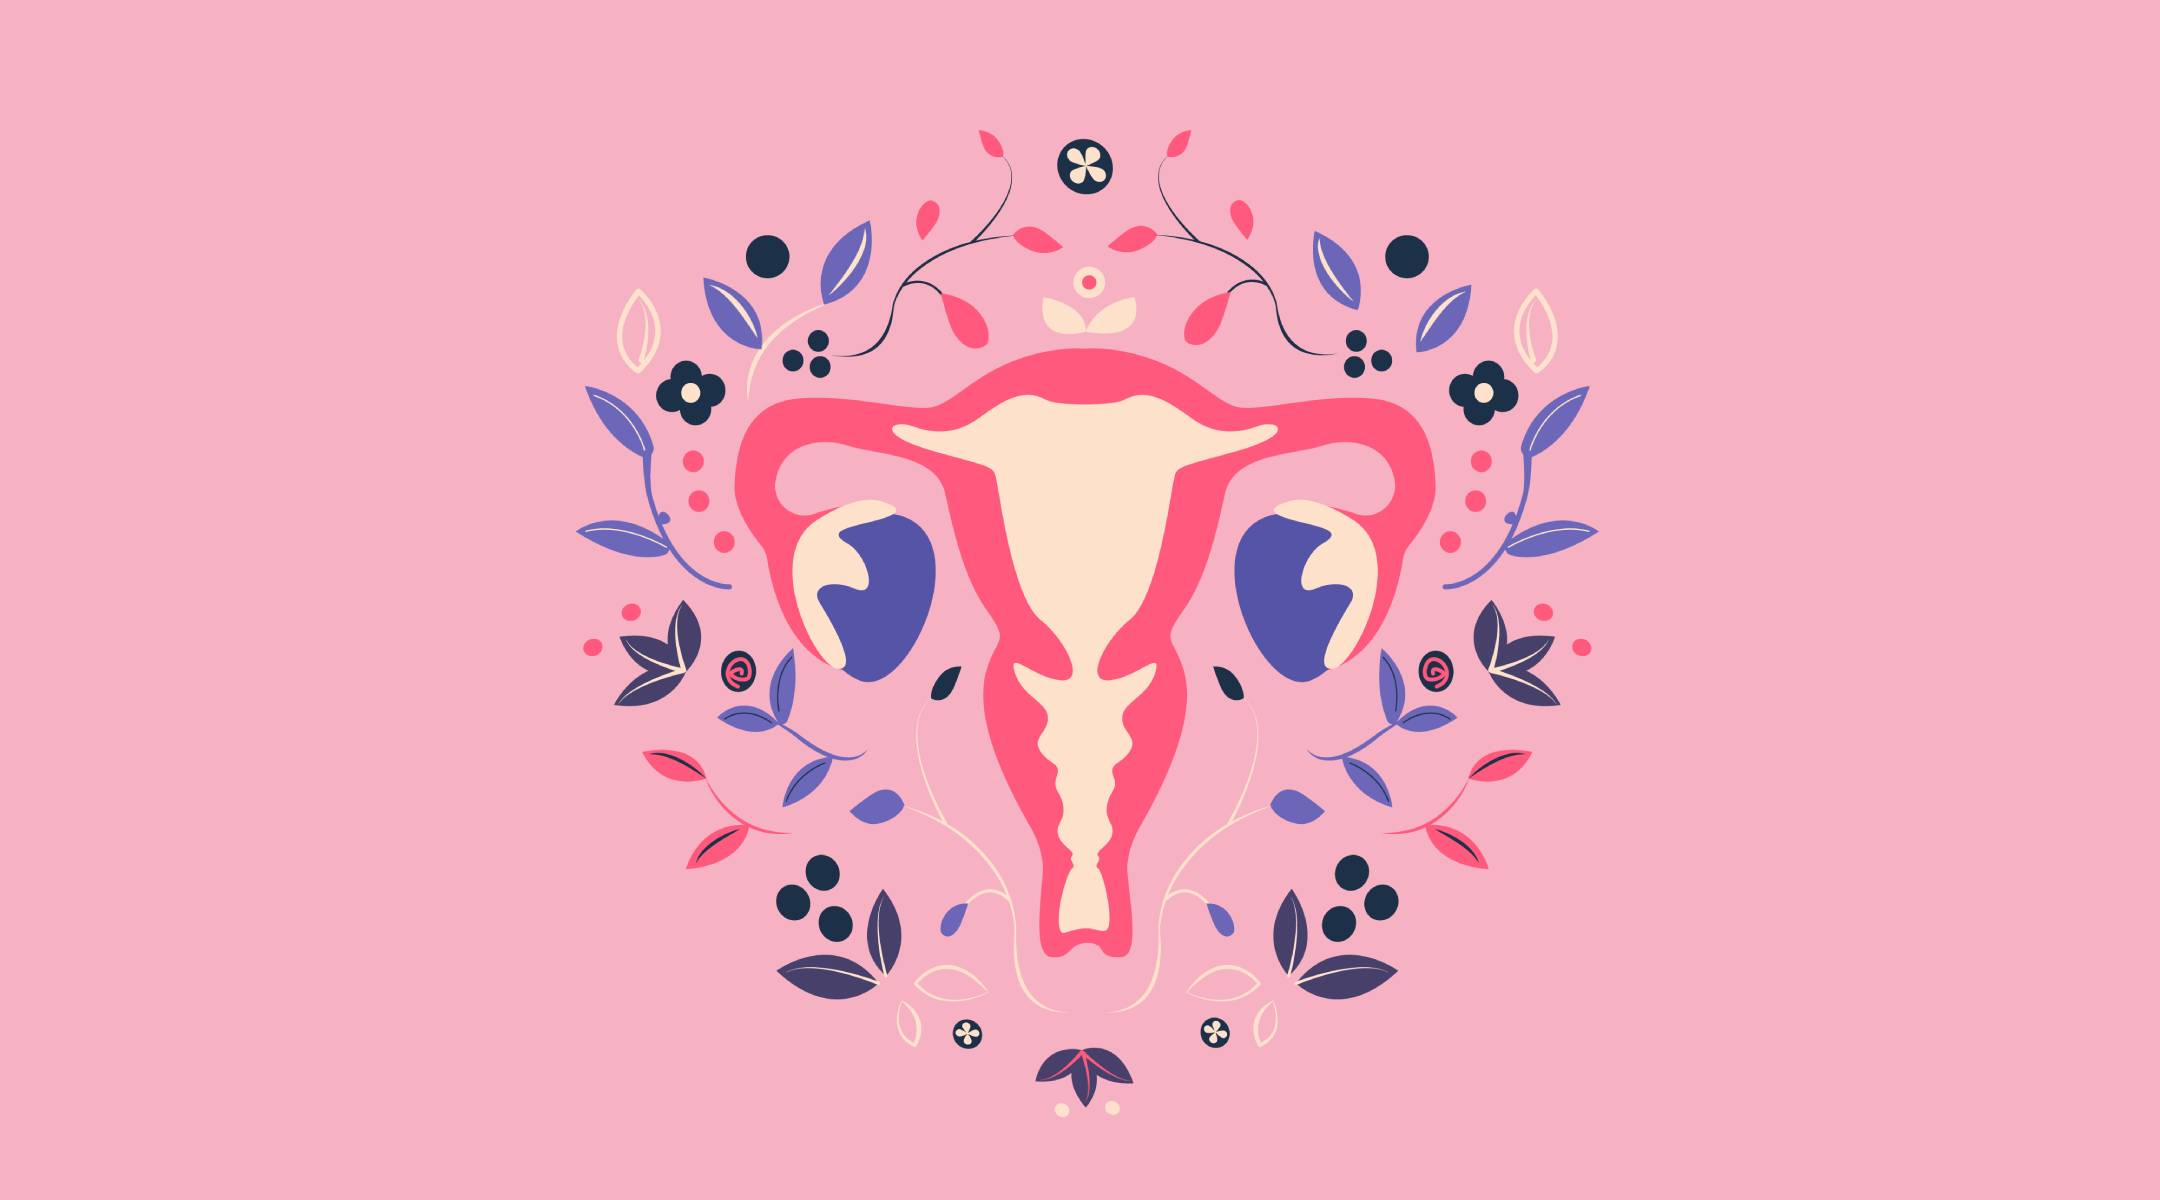 Cancer utérus sexualités info santé